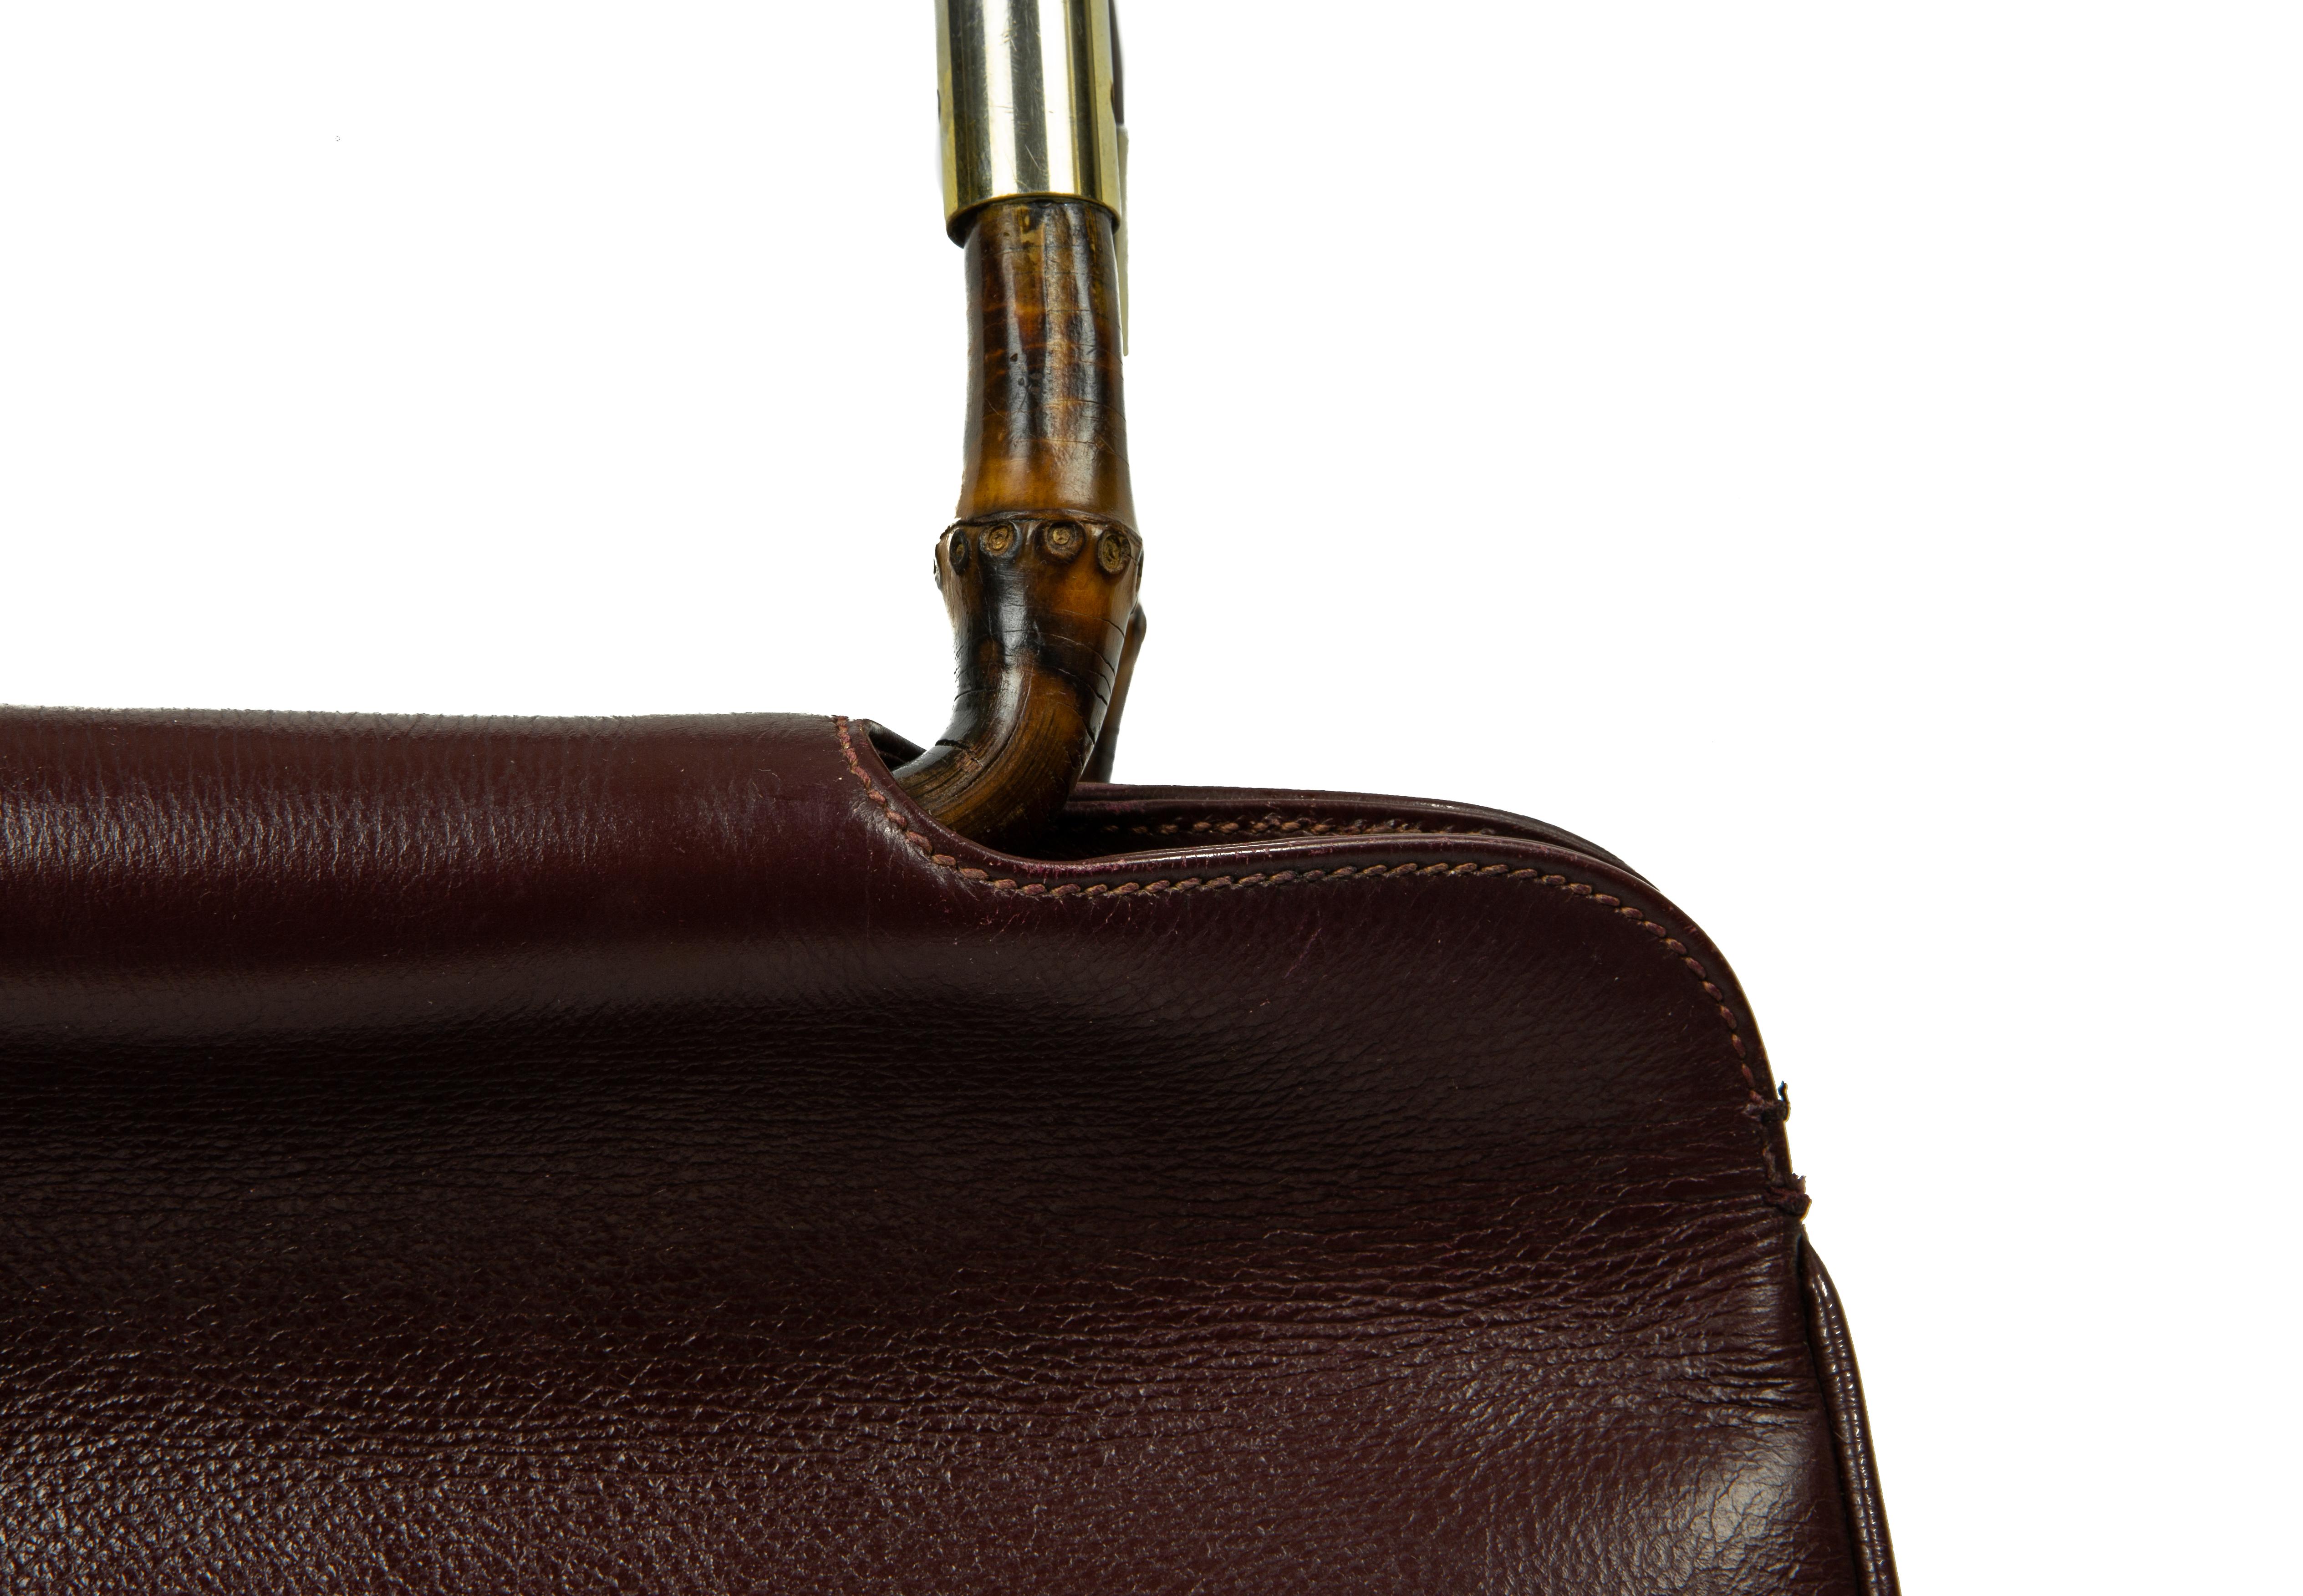 oxblood leather purse